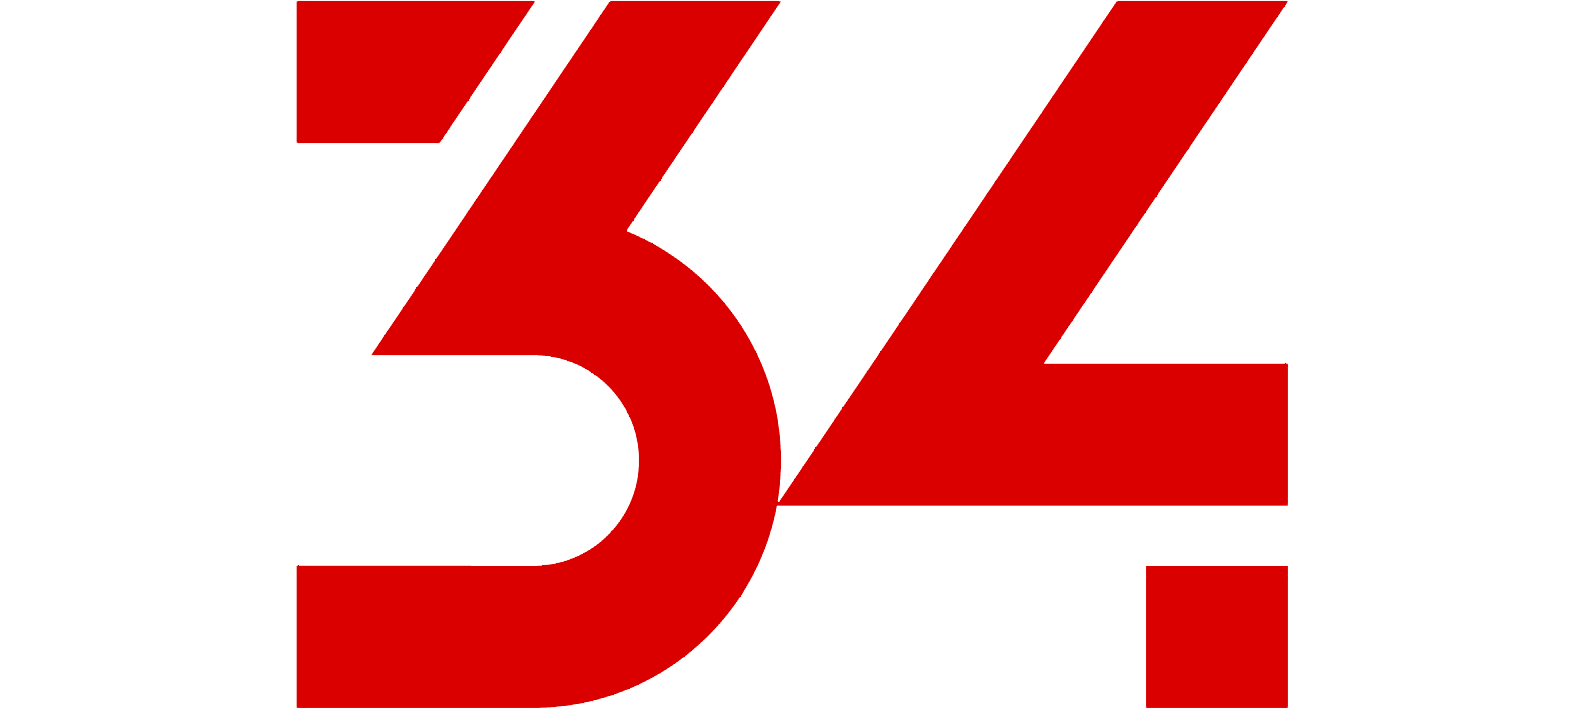 24 й канал. 34 Телеканал. Логотип телеканала 312. Пятый канал (Украина). Логотип телеканала дилер.